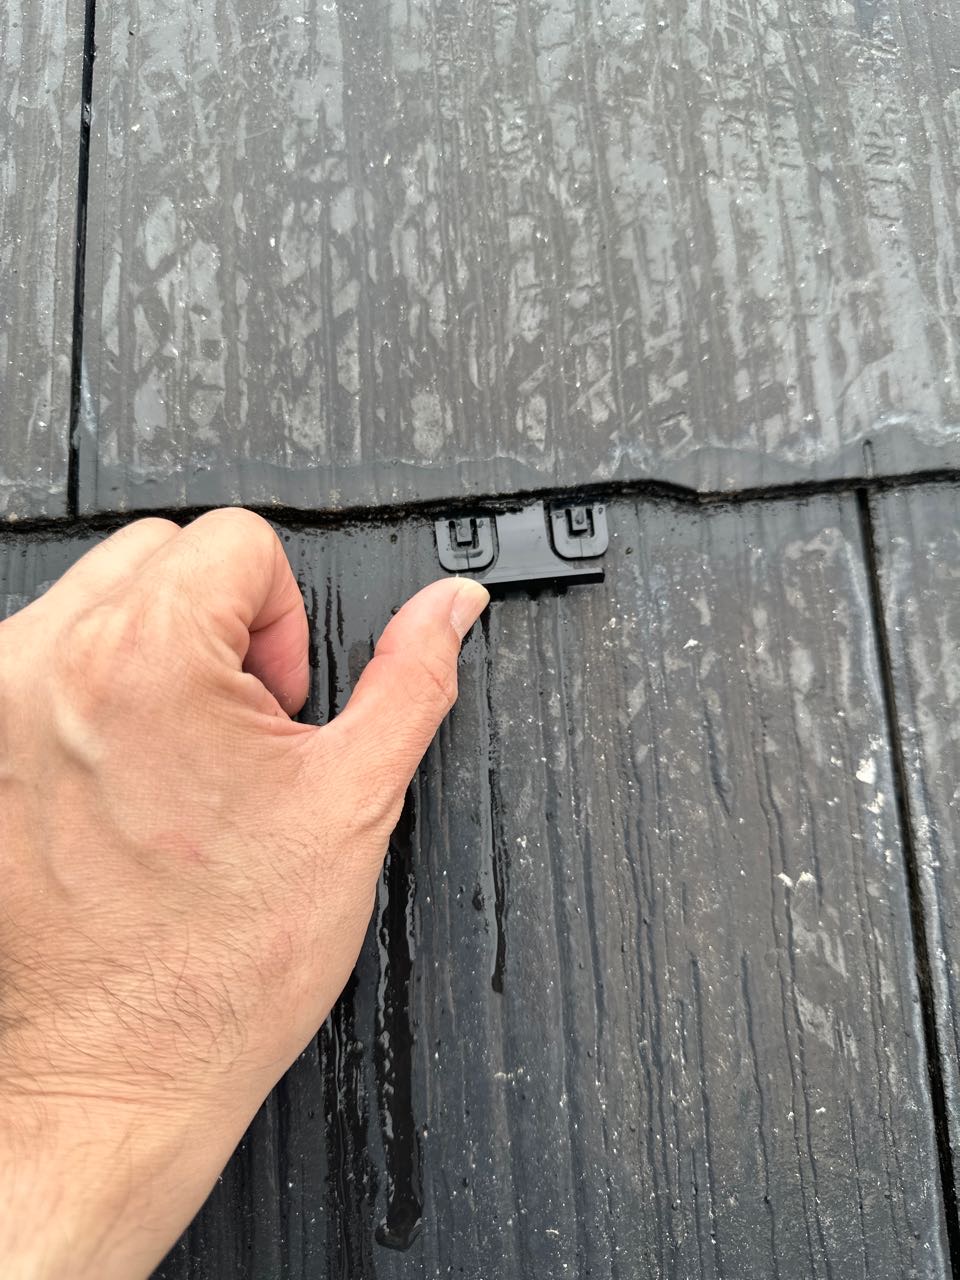 下塗りが終わりましたらカラーベストの重なりの縁を切る部材を差し込んでいきます。屋根材の隙間を塗料がふさがないようにするため
の板状のスペーサーです。